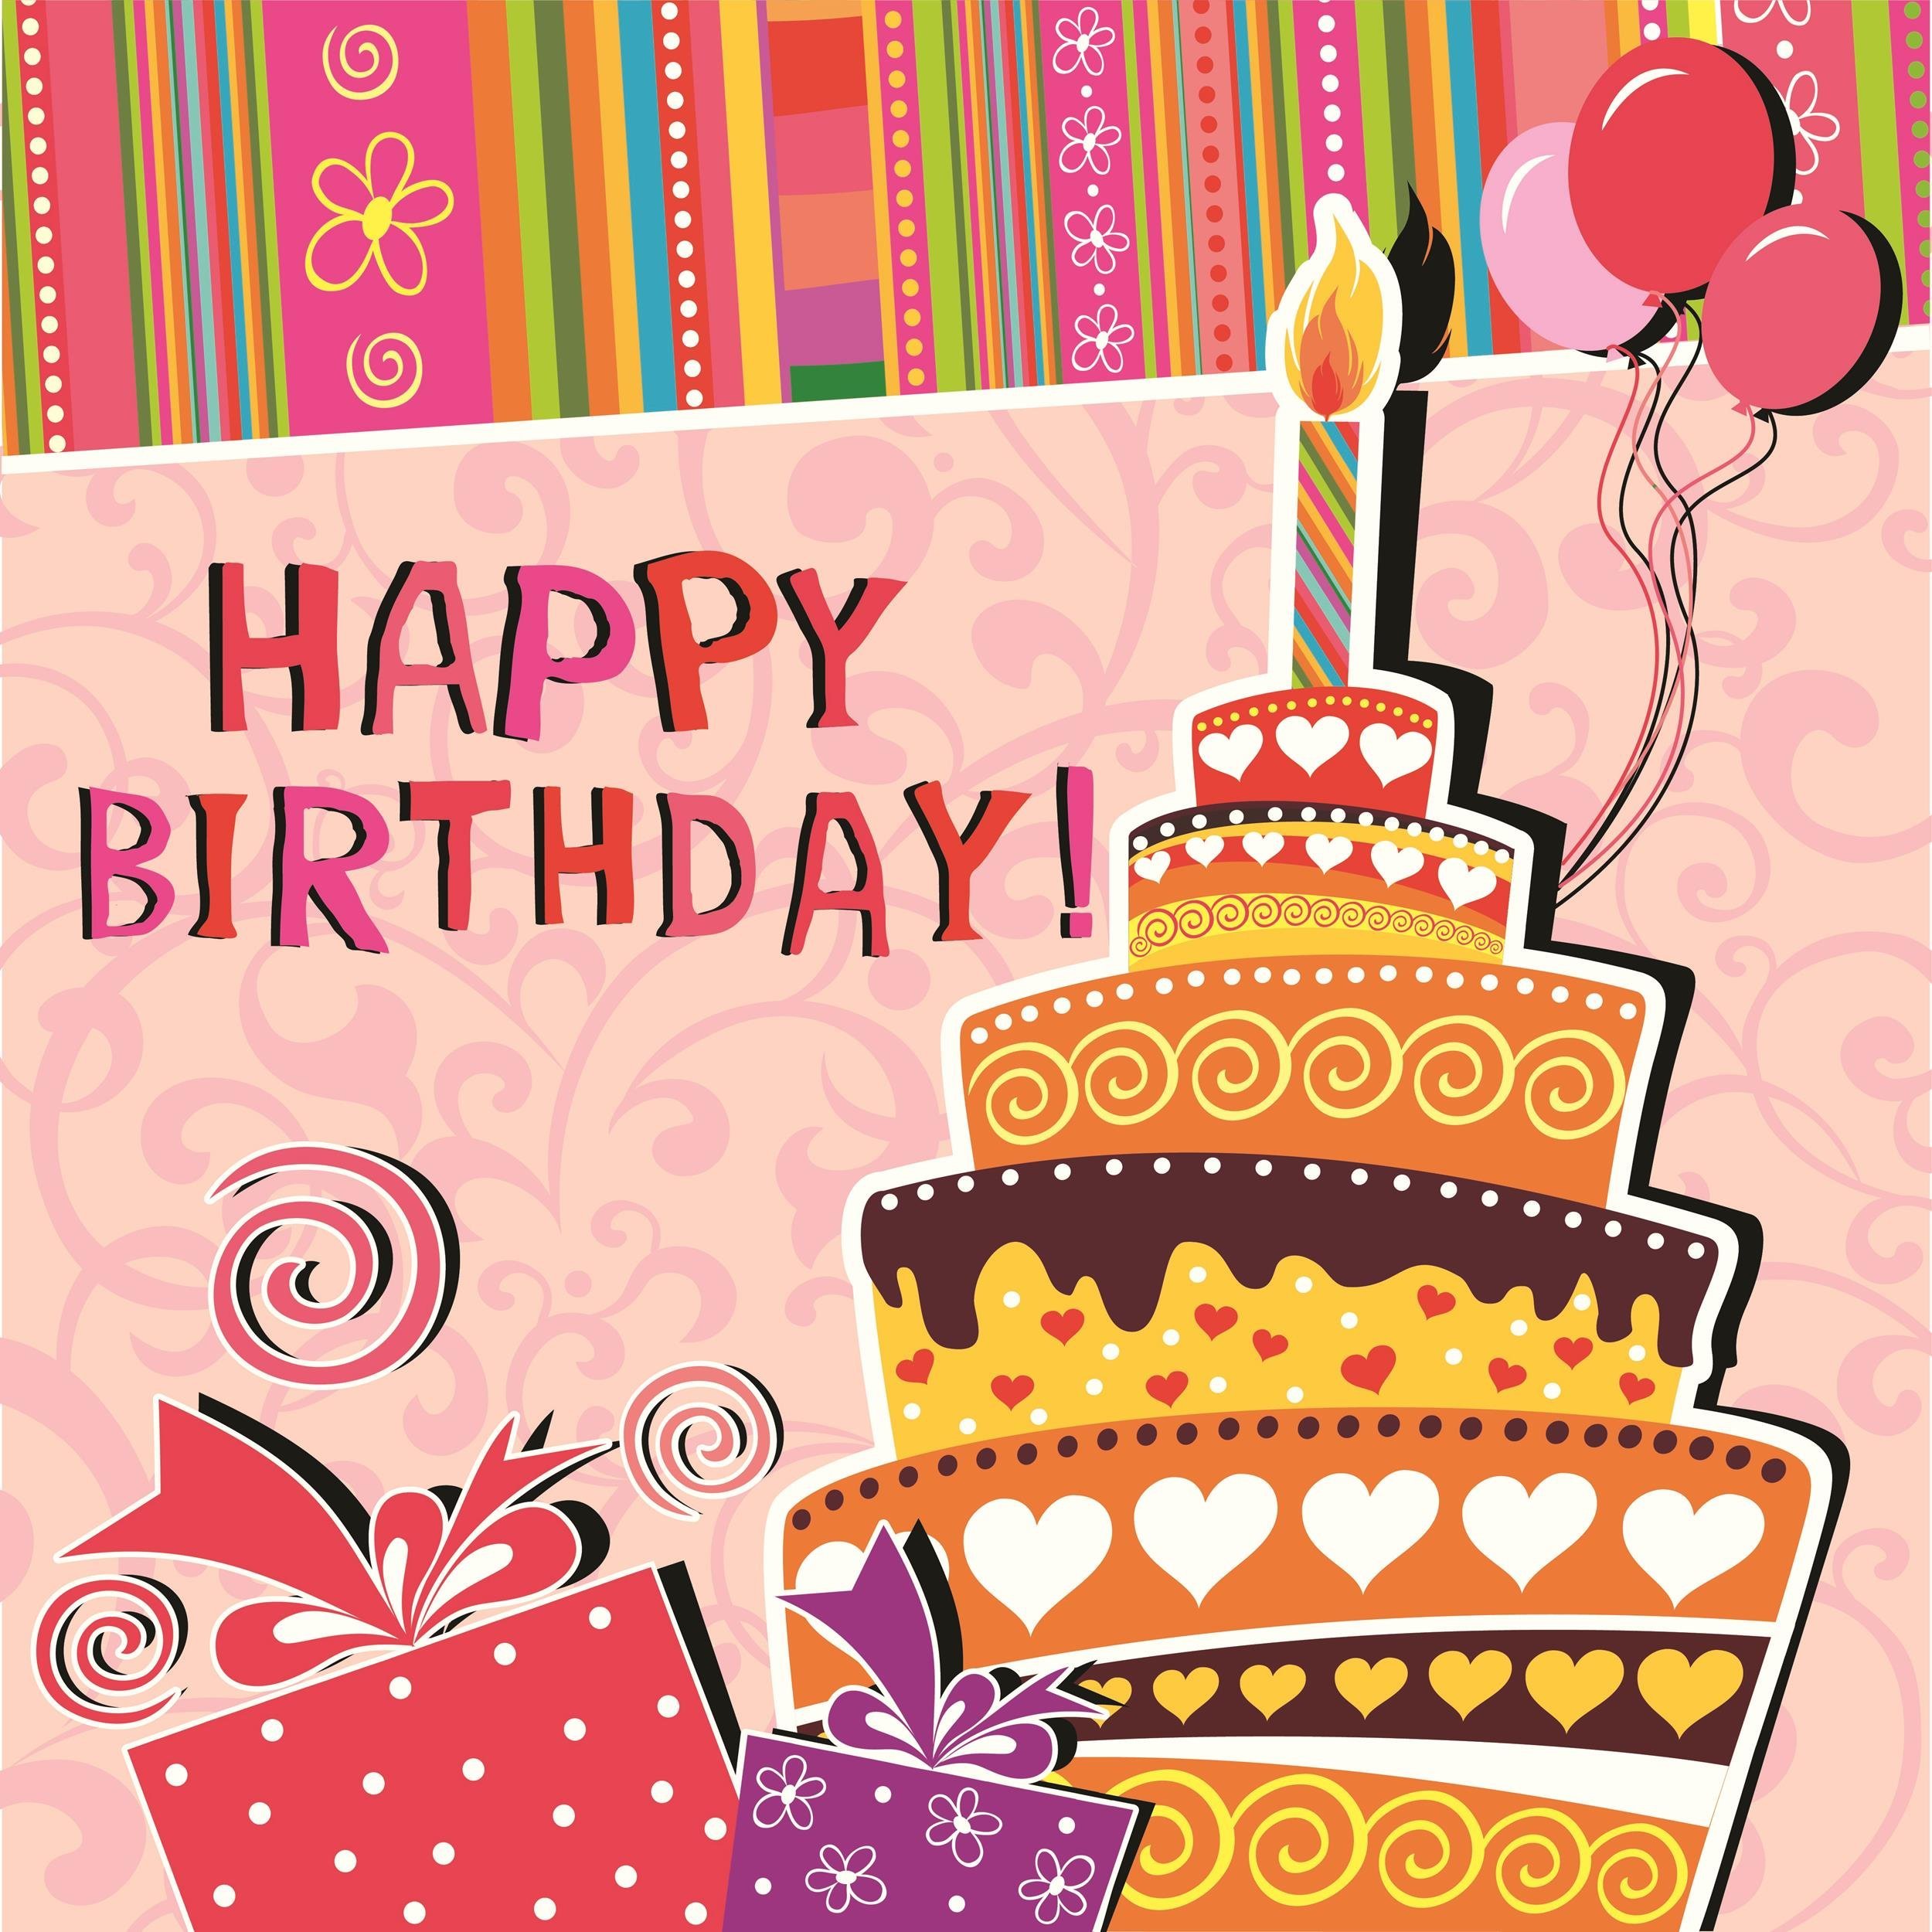 A birthday. С днем рождения. С днем рождения иллюстрация. Открытка с днём рождения торт. Стильные открытки с днем рождения.